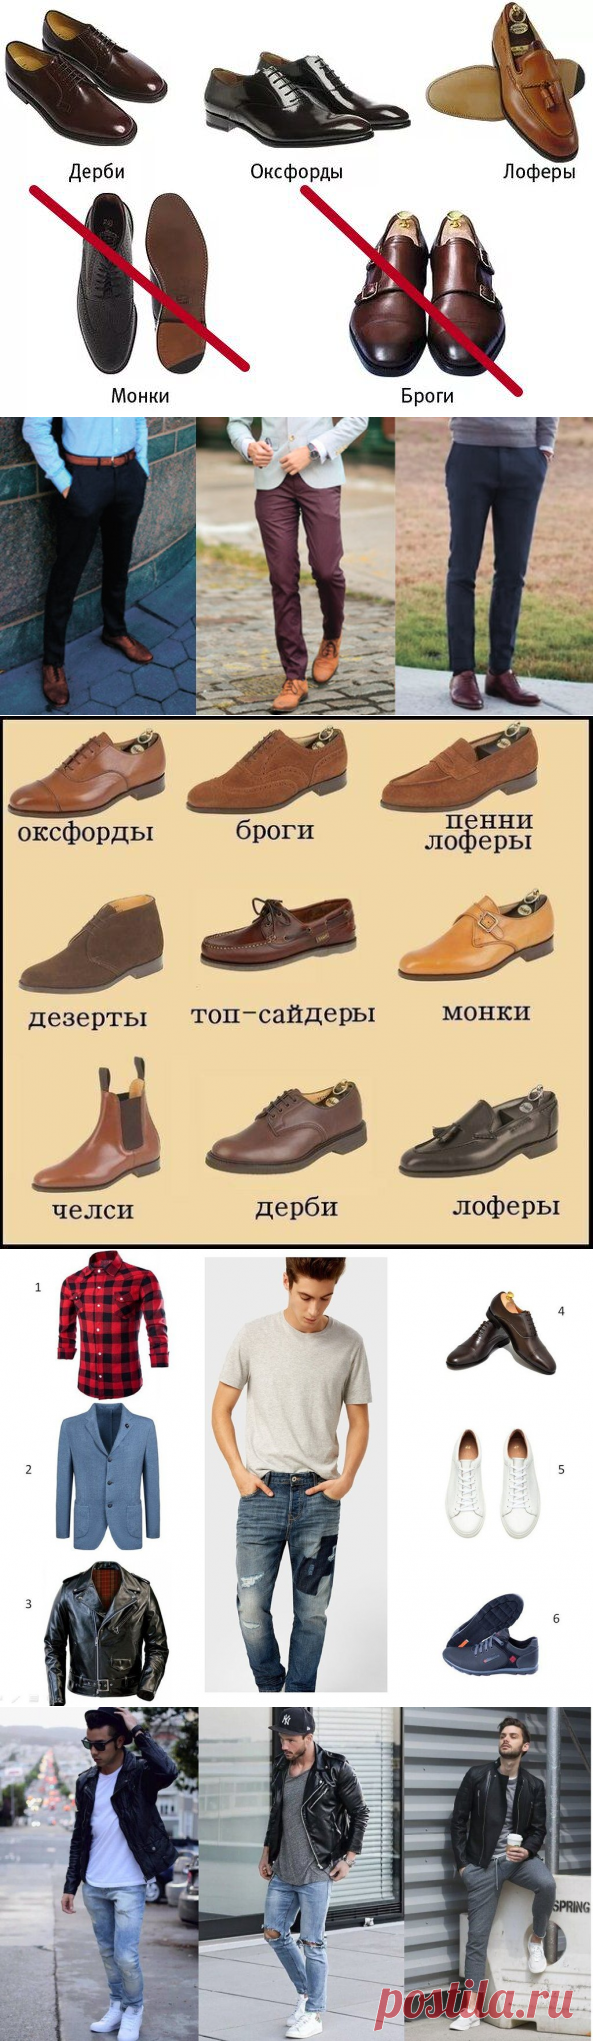 Как мужчине правильно подобрать обувь к верху. Простота мужского стиля | Рекомендательная система Пульс Mail.ru